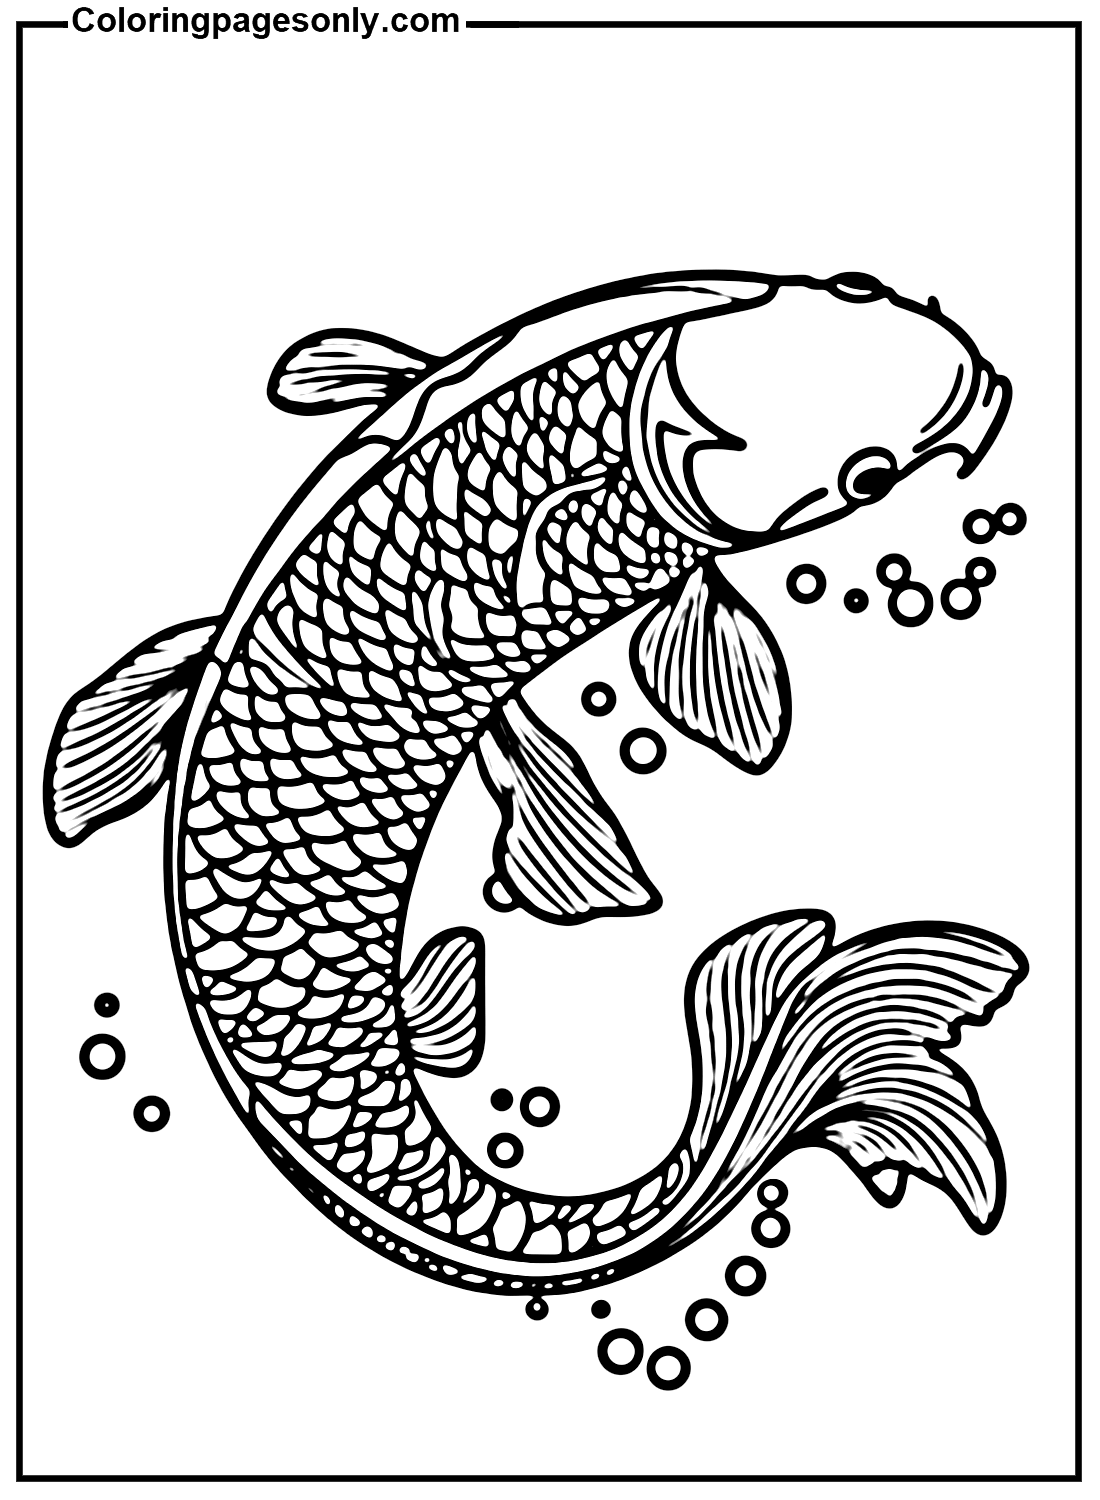 Imagens gratuitas de peixes Koi de peixes Koi